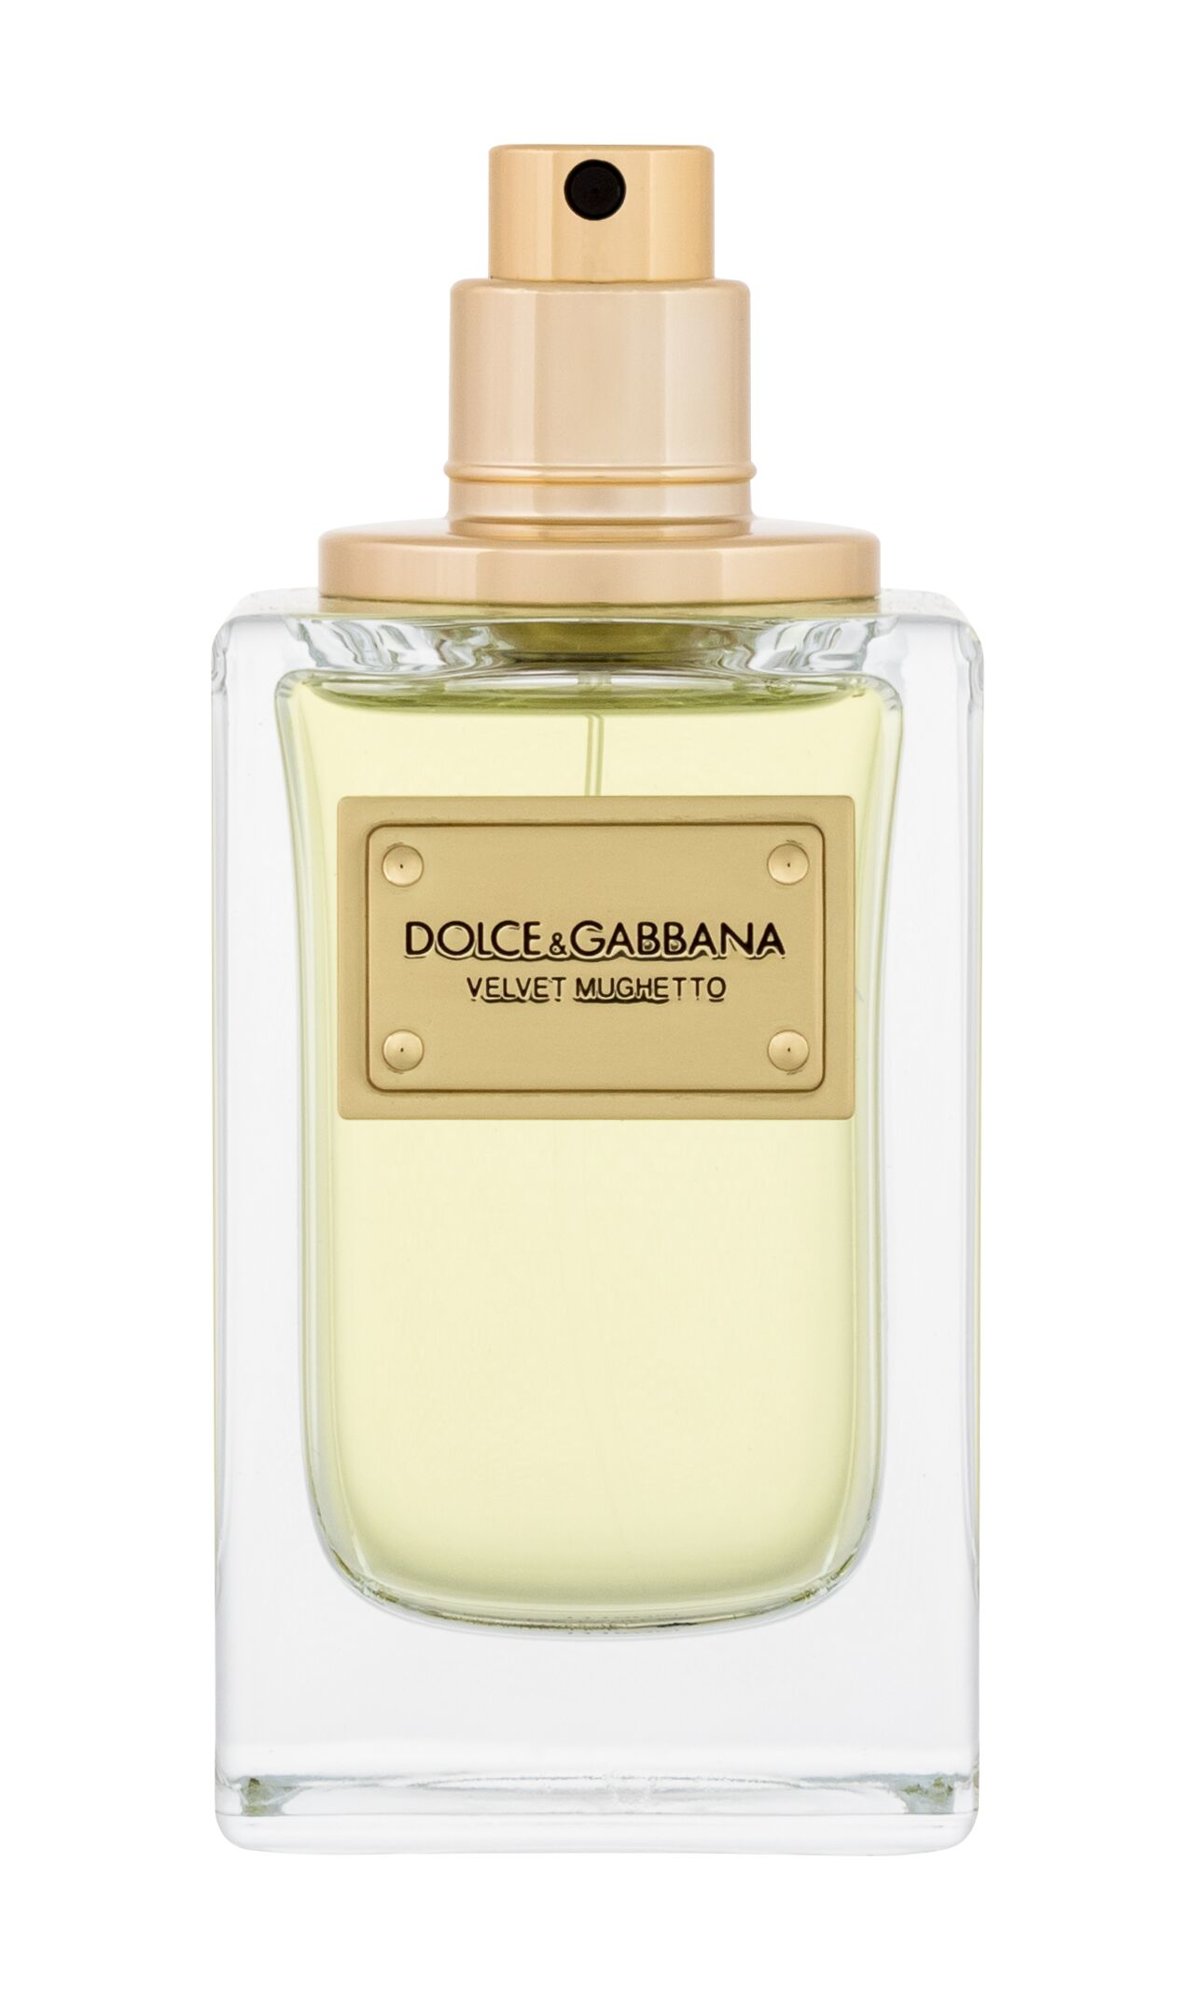 Dolce&Gabbana Velvet Mughetto 50ml Kvepalai Unisex EDP Testeris